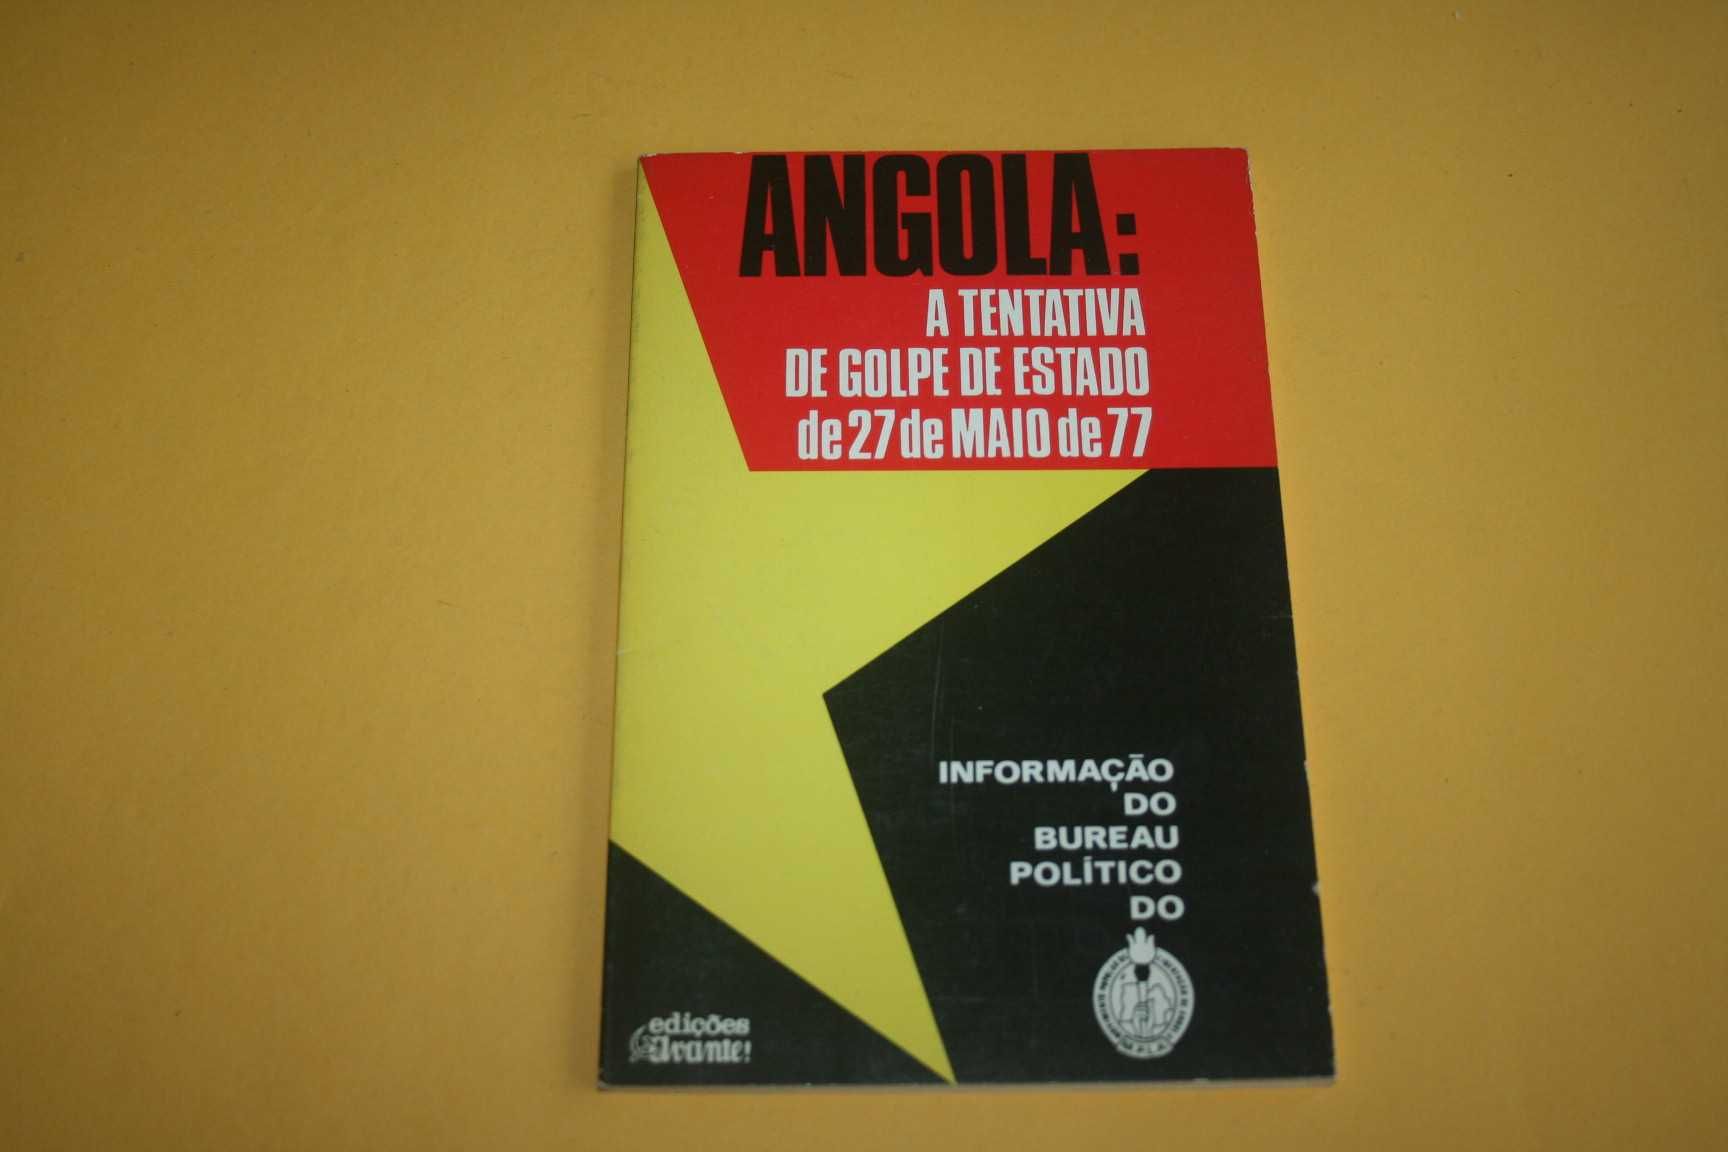 [] ANGOLA - A tentativa de golpe de estado de 27 de Maio de 77